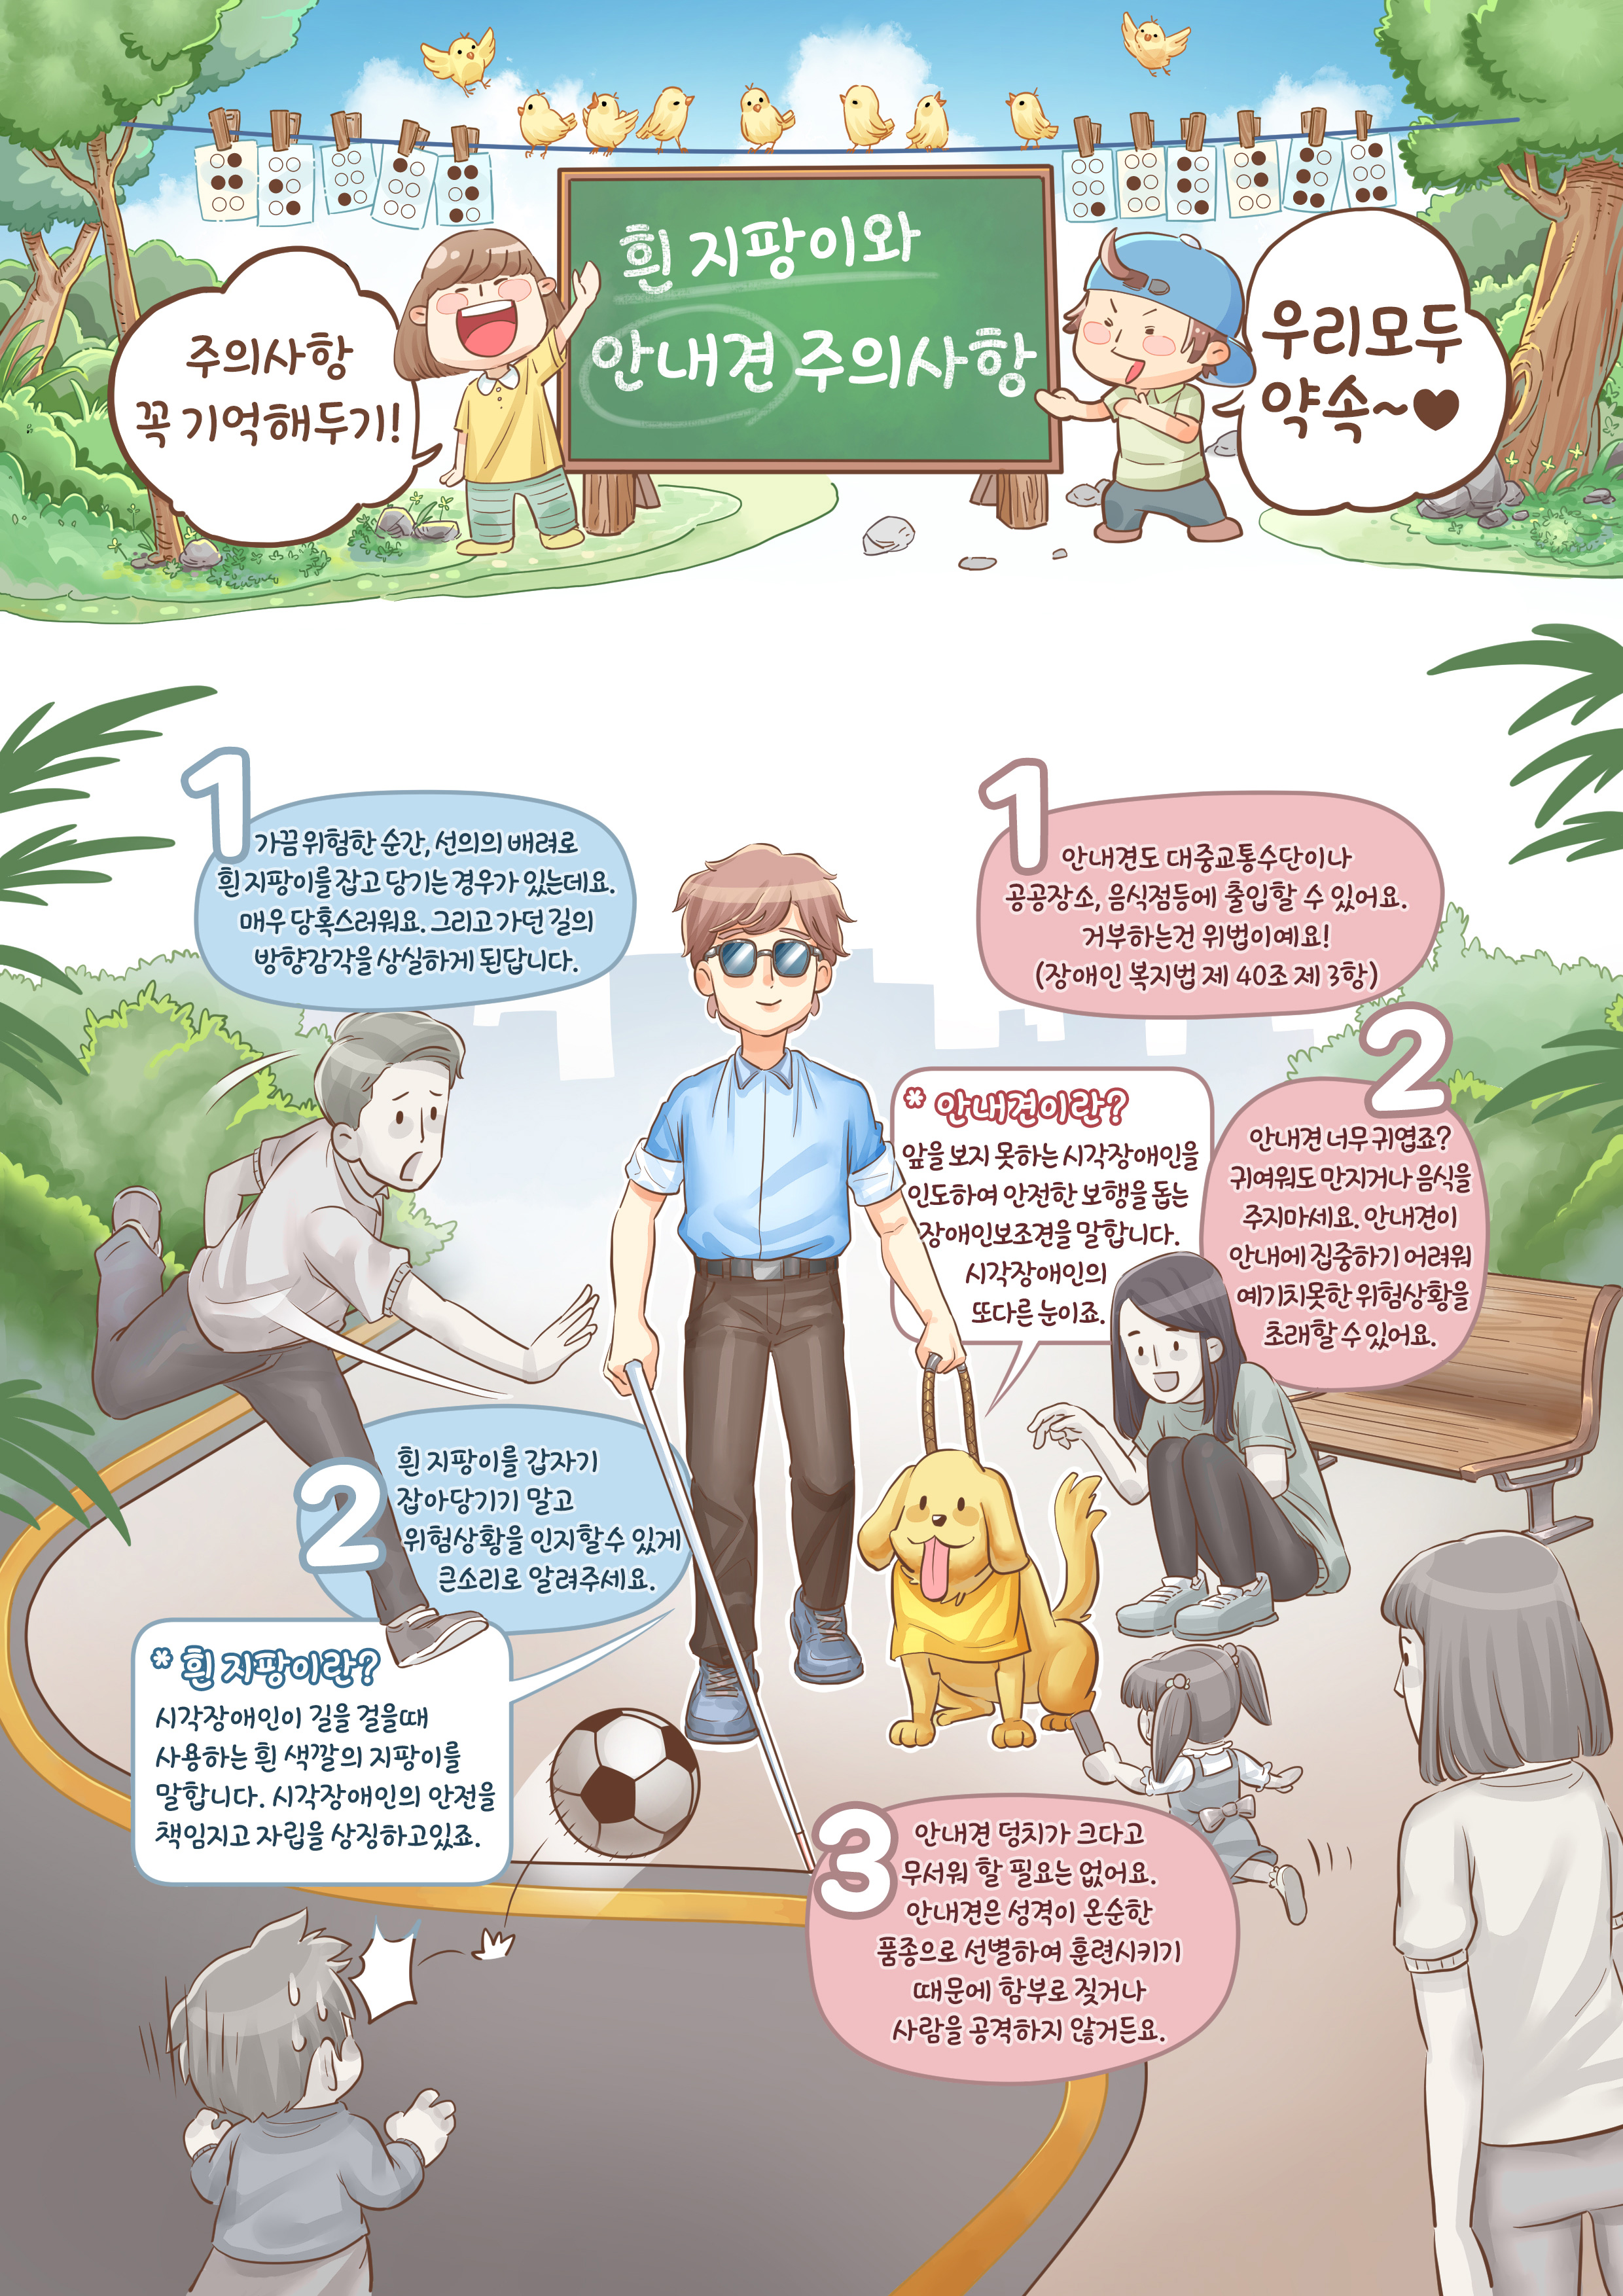 시각장애인의 이해 교육웹툰 4화. 원고는 하단을 참조하세요.